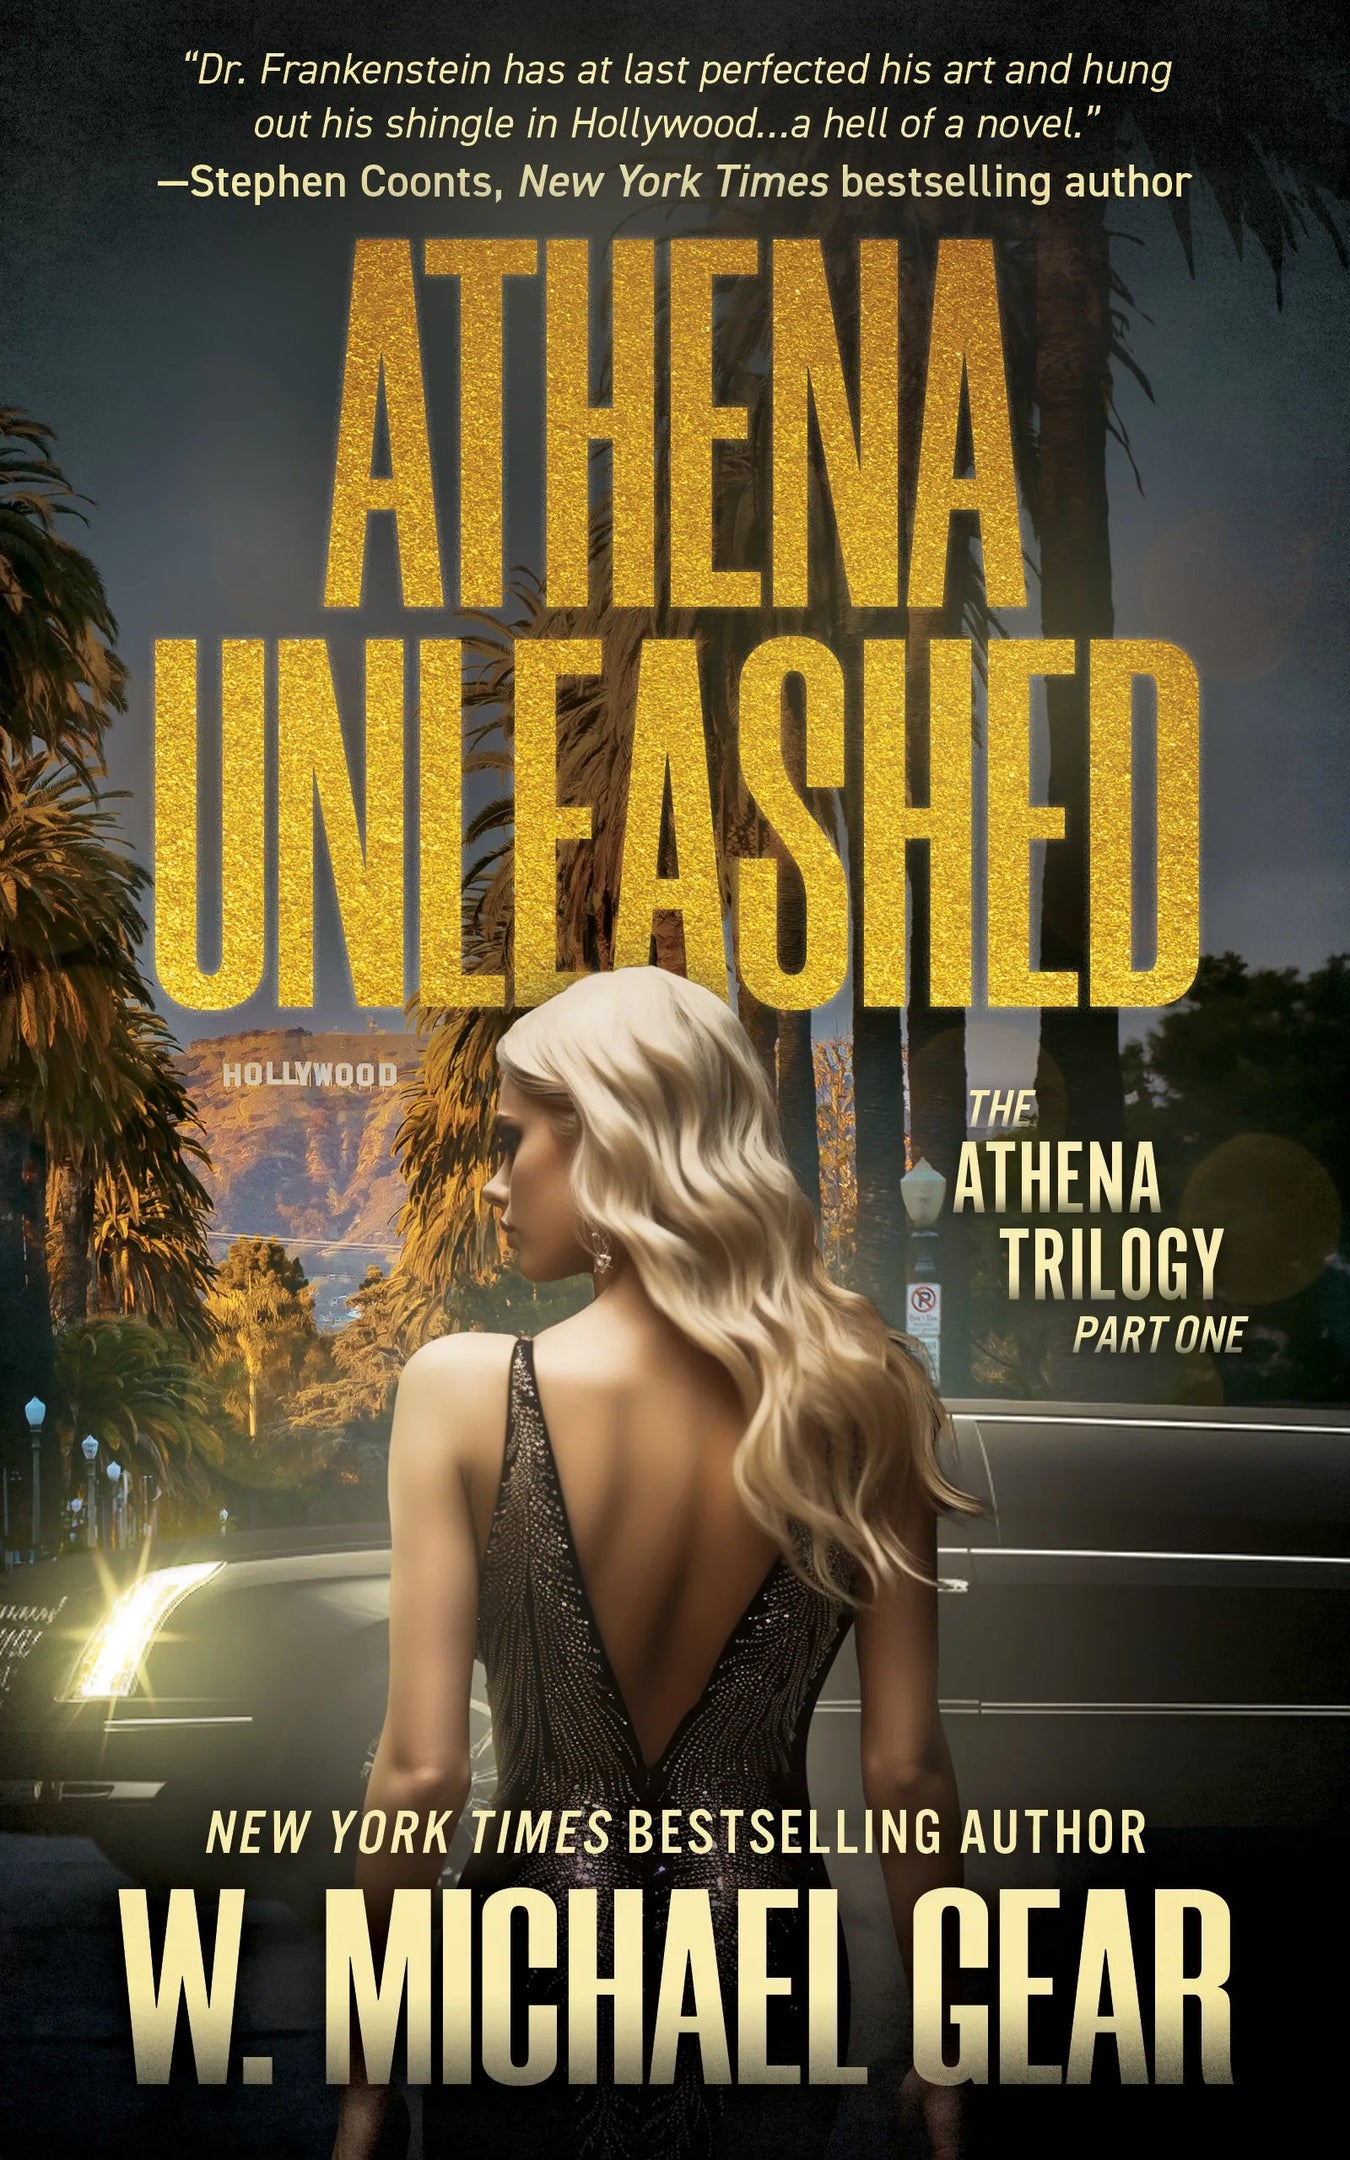 The Athena Trilogy